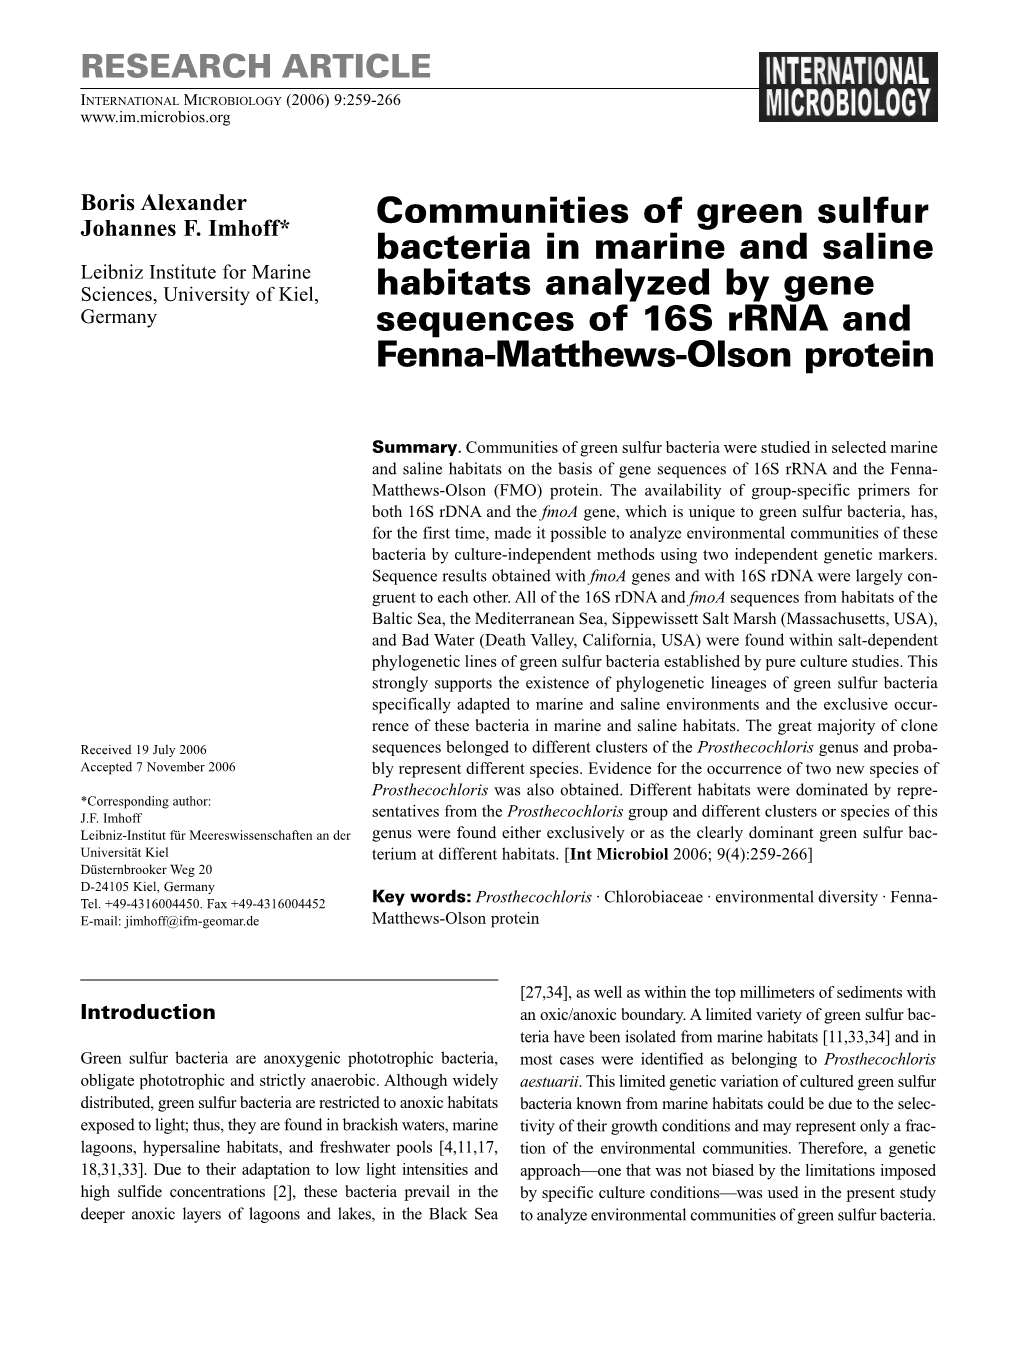 Communities of Green Sulfur Bacteria in Marine and Saline Habitats